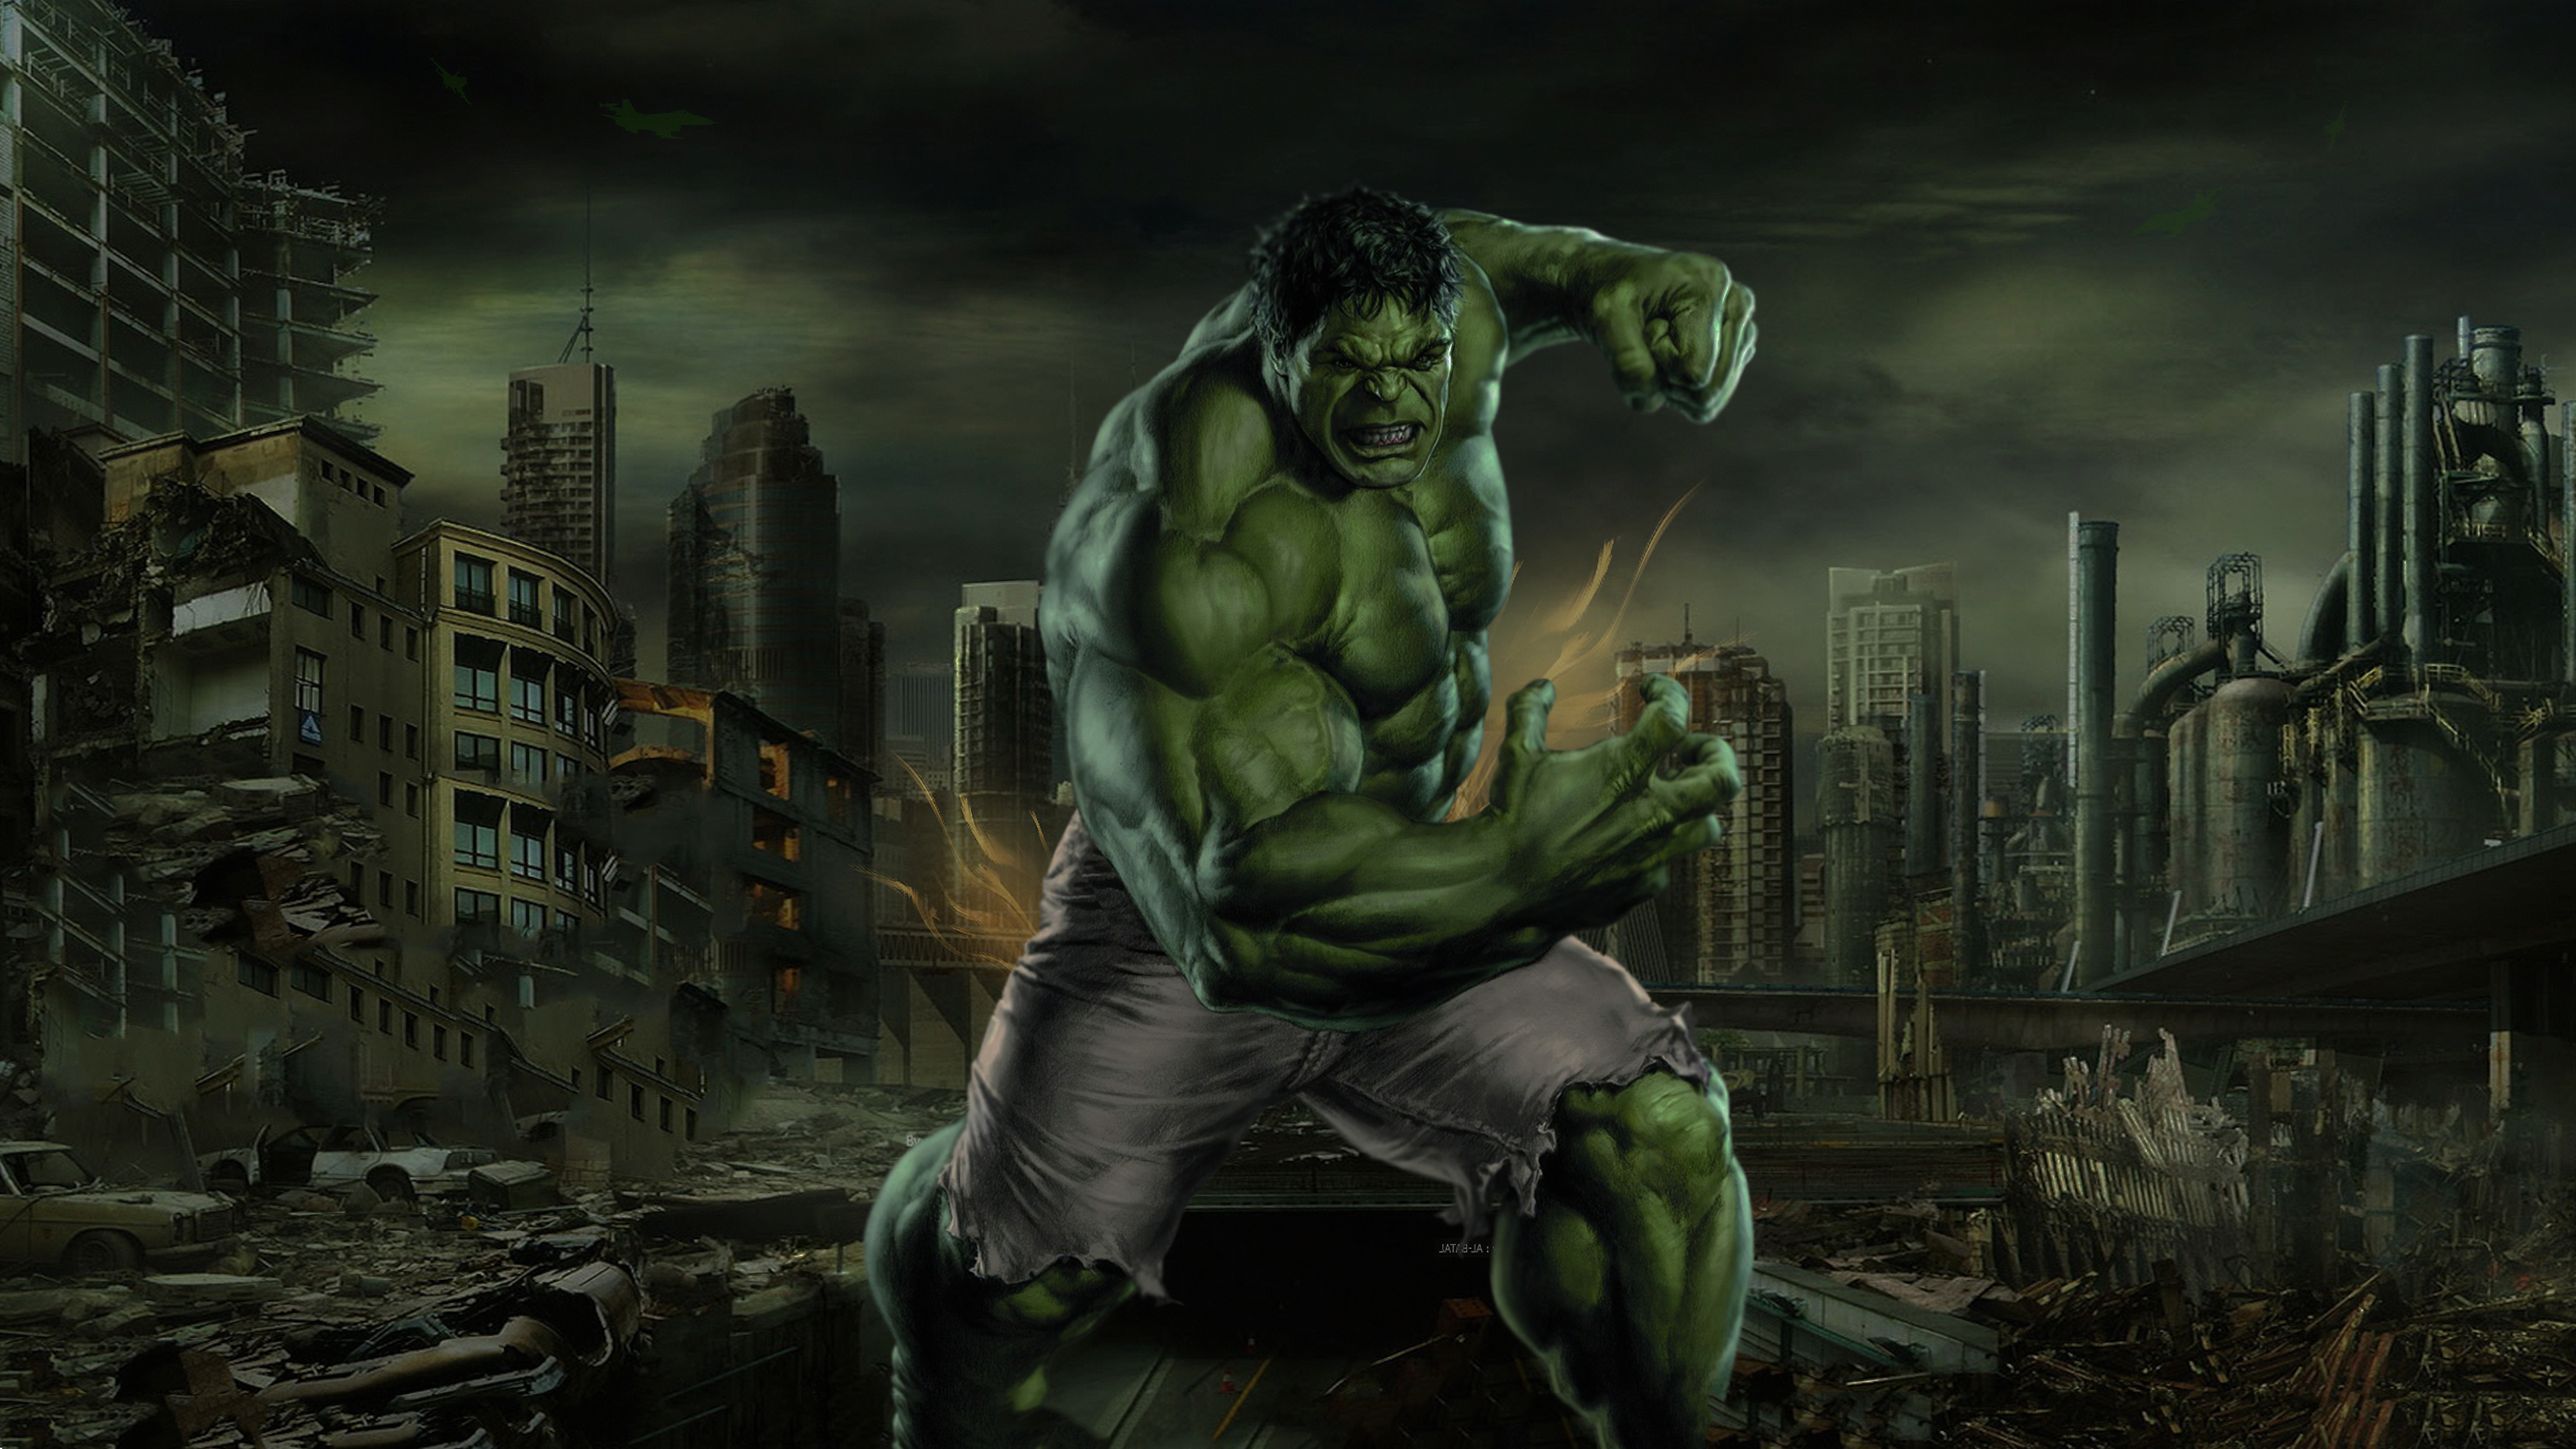 Hulk Cartoon Wallpaper Hd Free Download Myweb